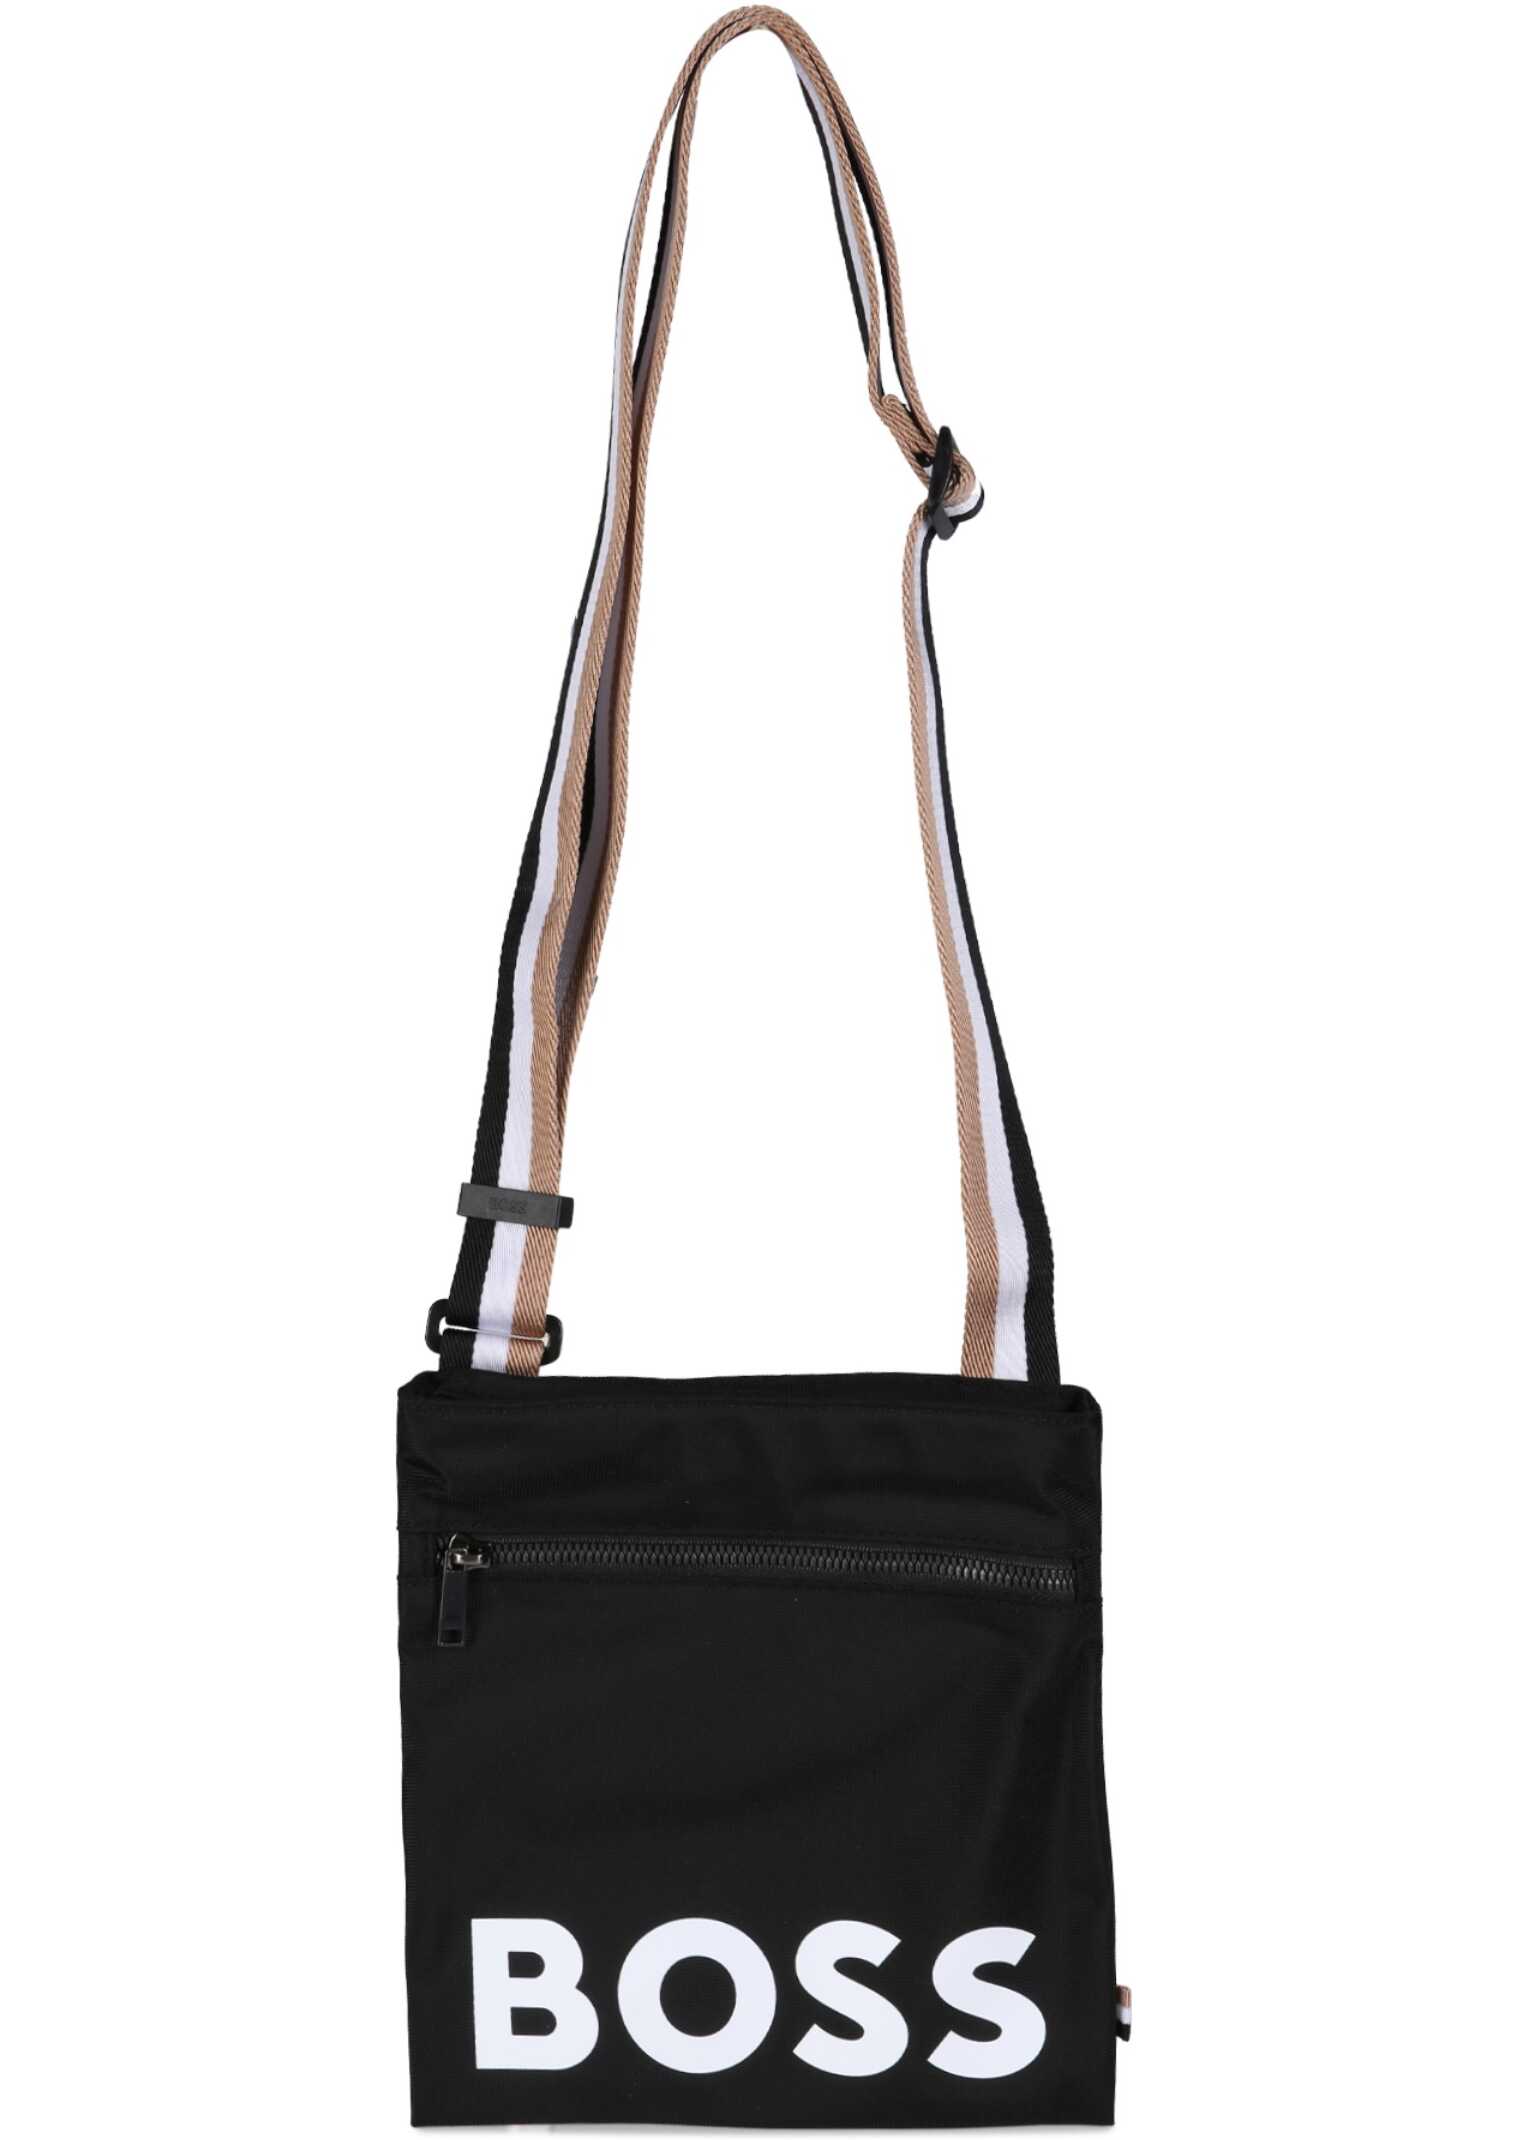 BOSS Shoulder Bag With Logo BLACK image6